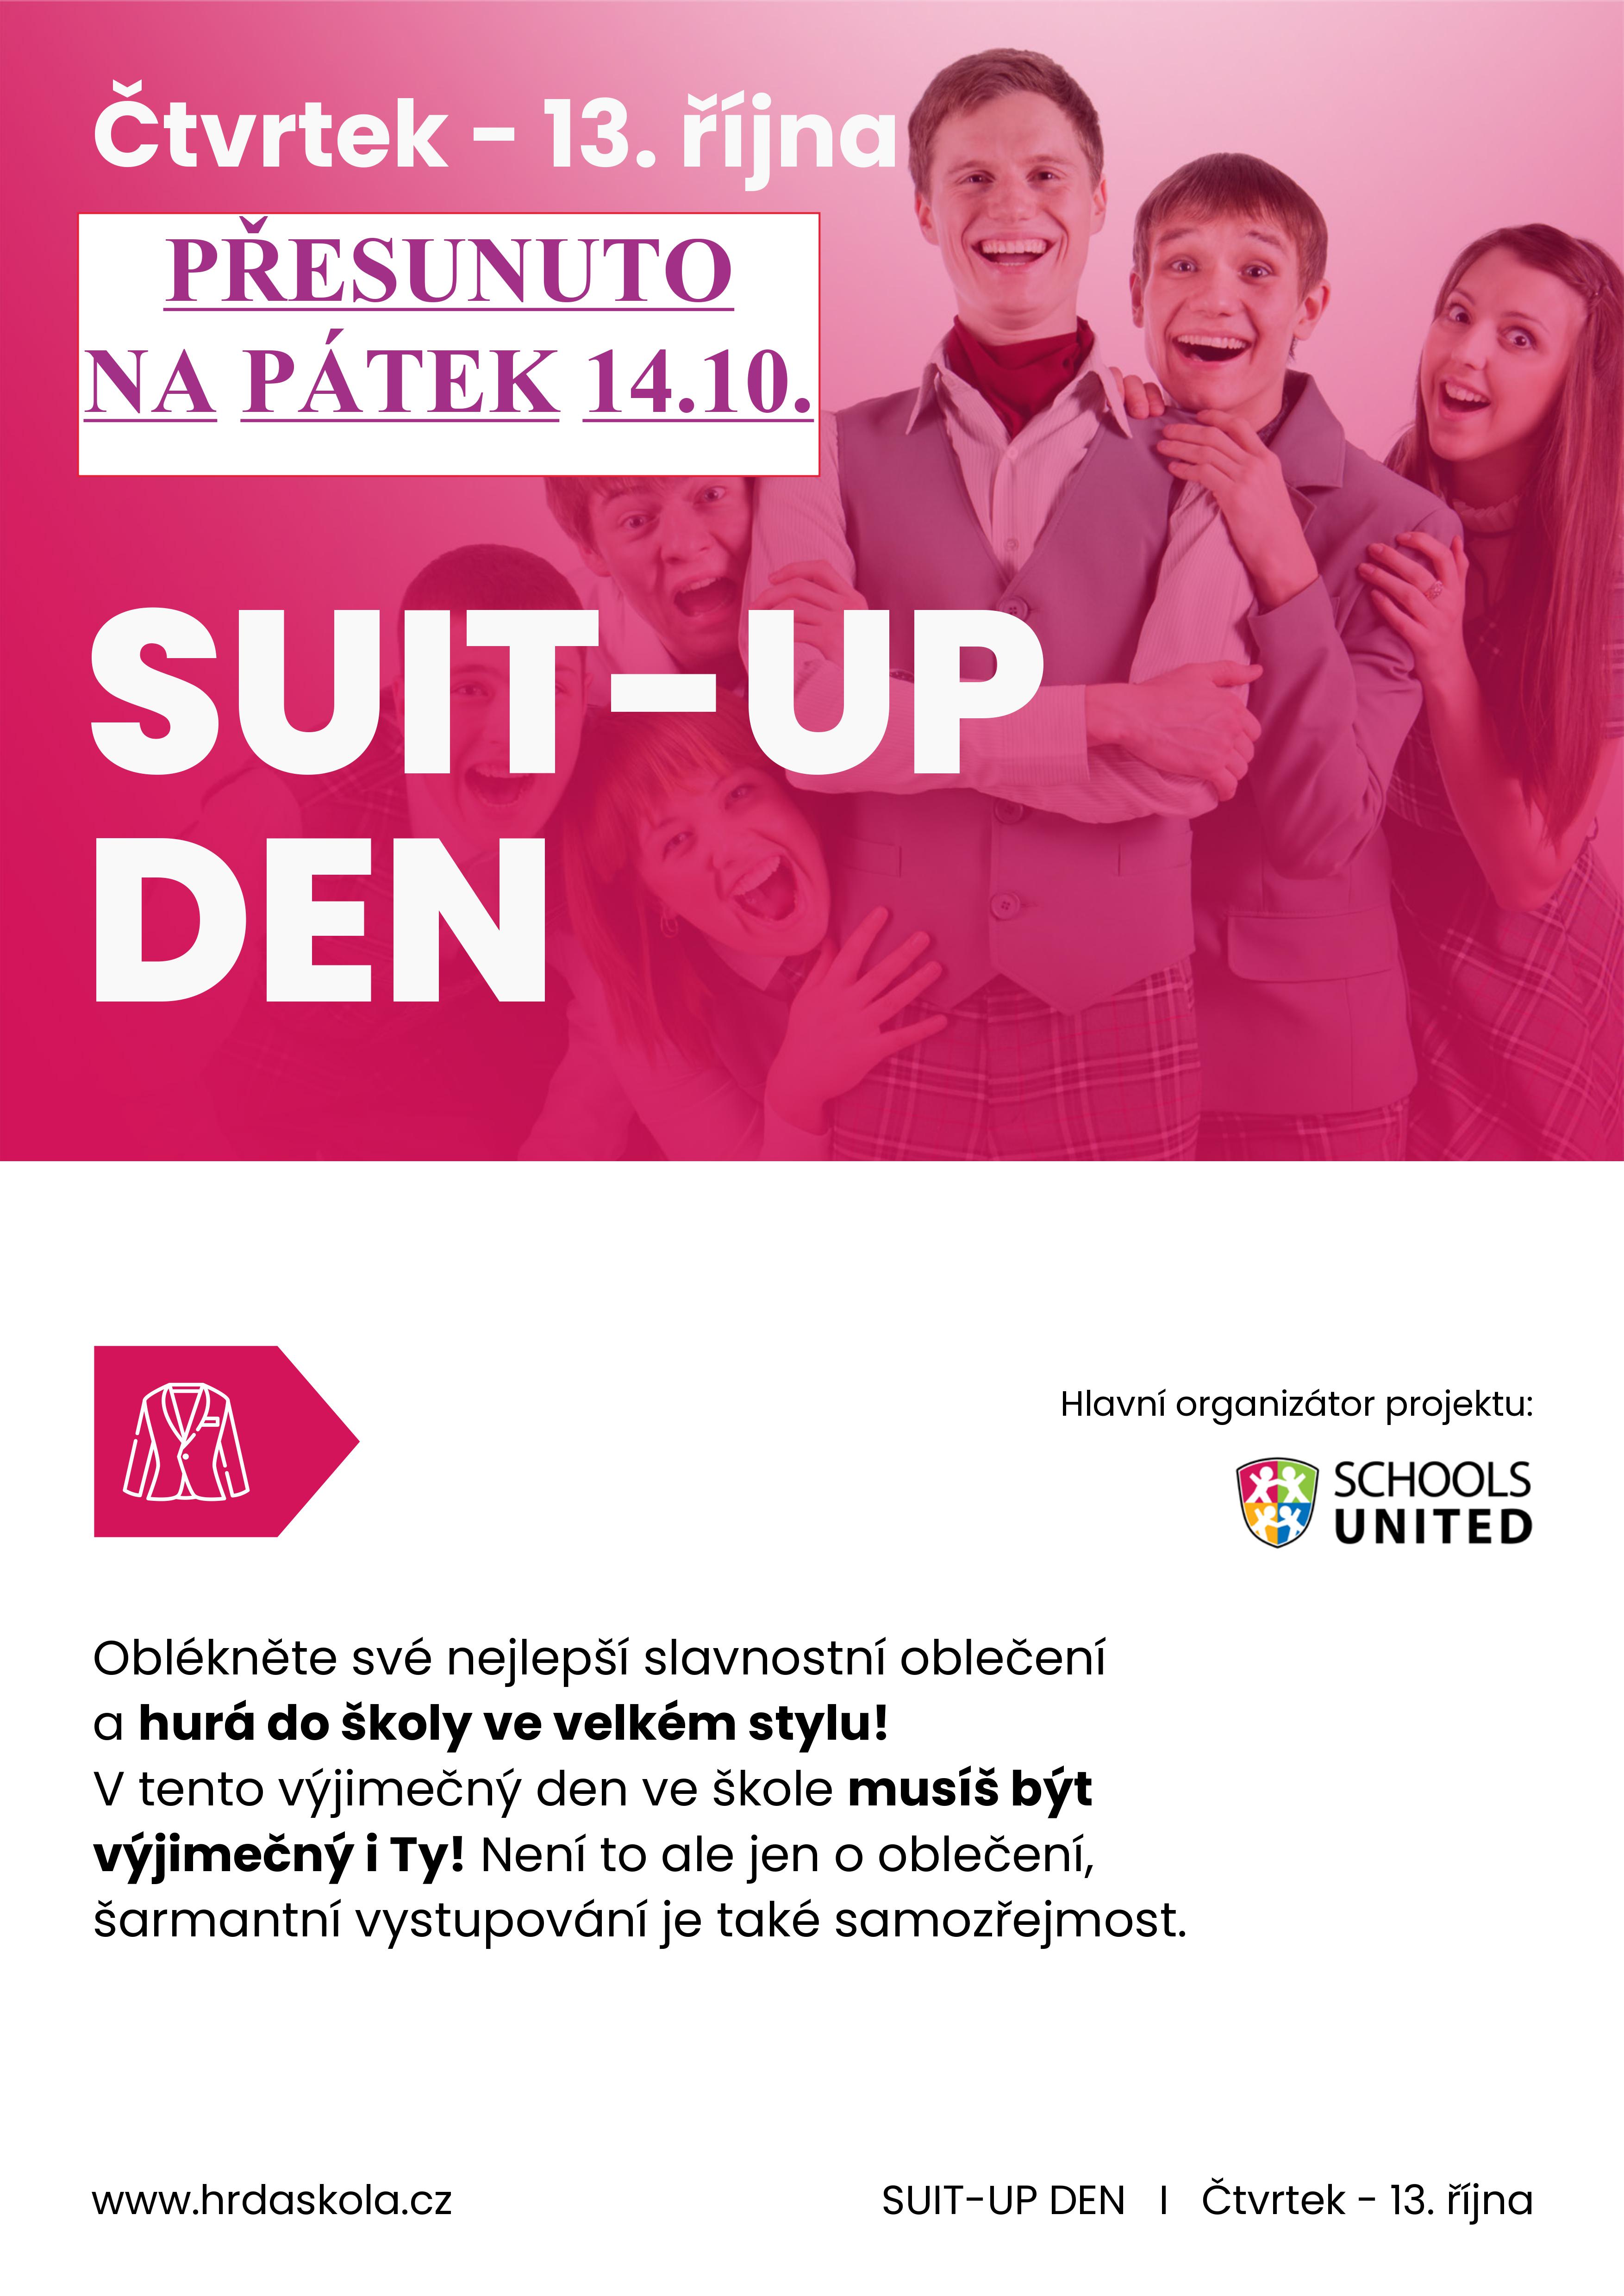 Suit-up den